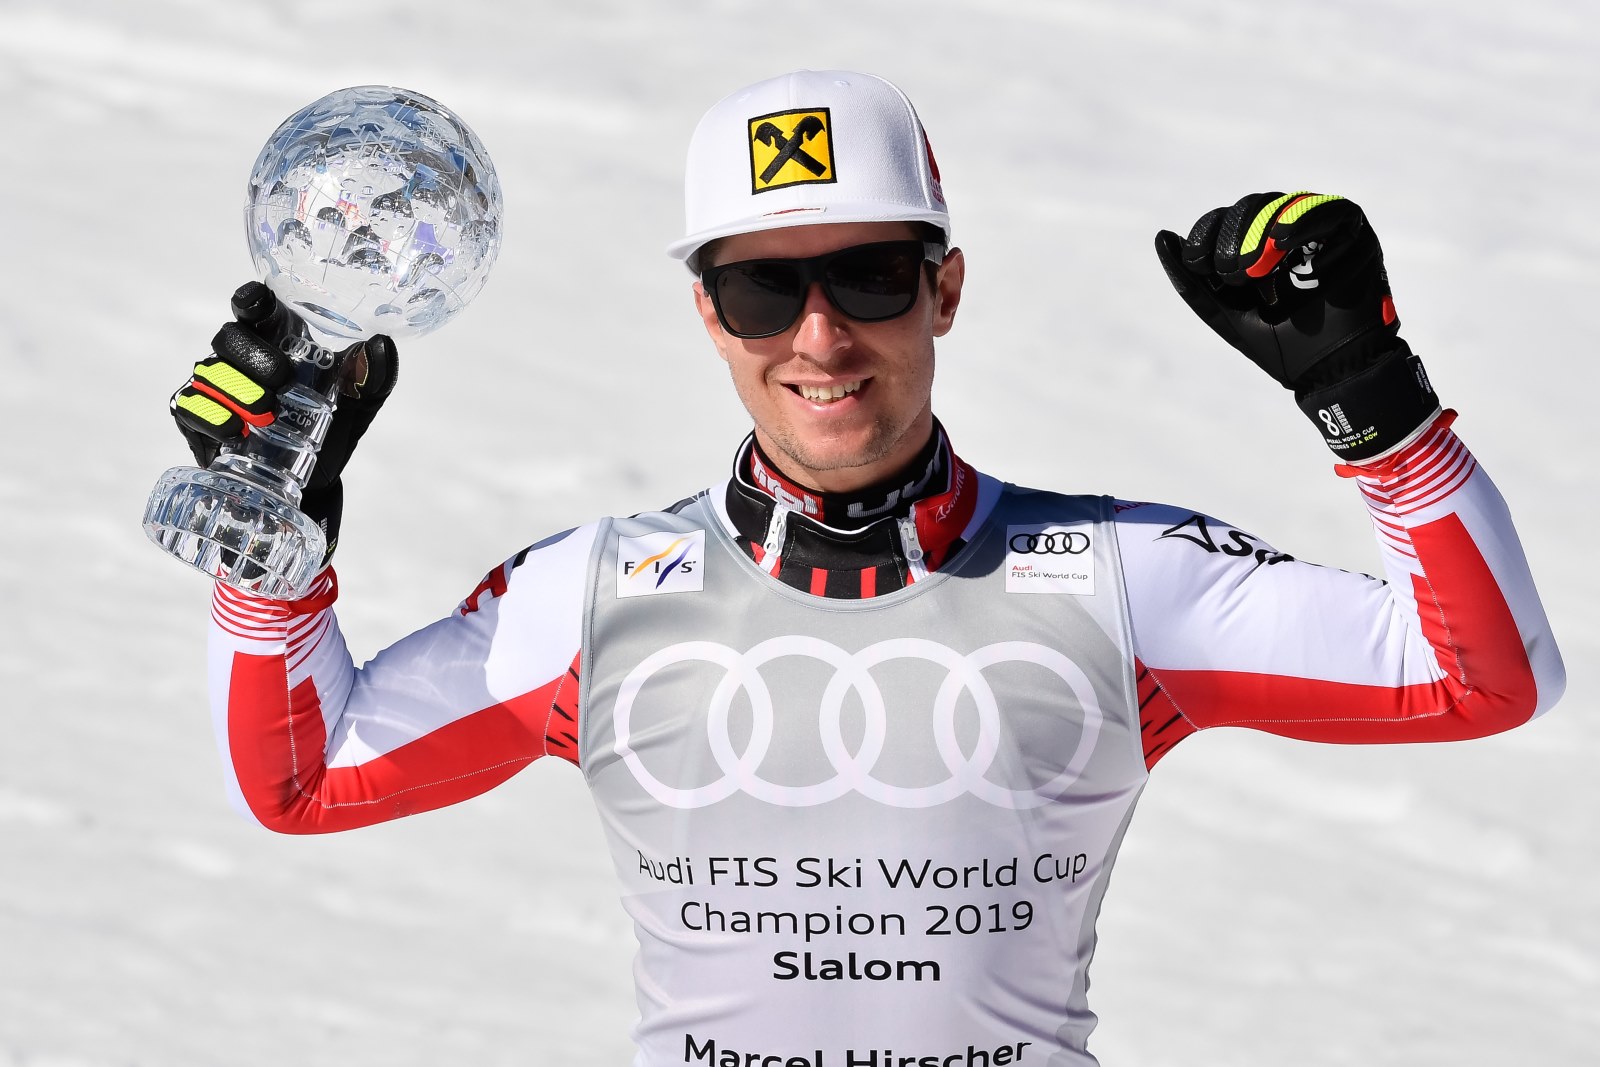 El campeón austriaco Marcel Hirscher decidirá a finales de verano si se retira del esquí